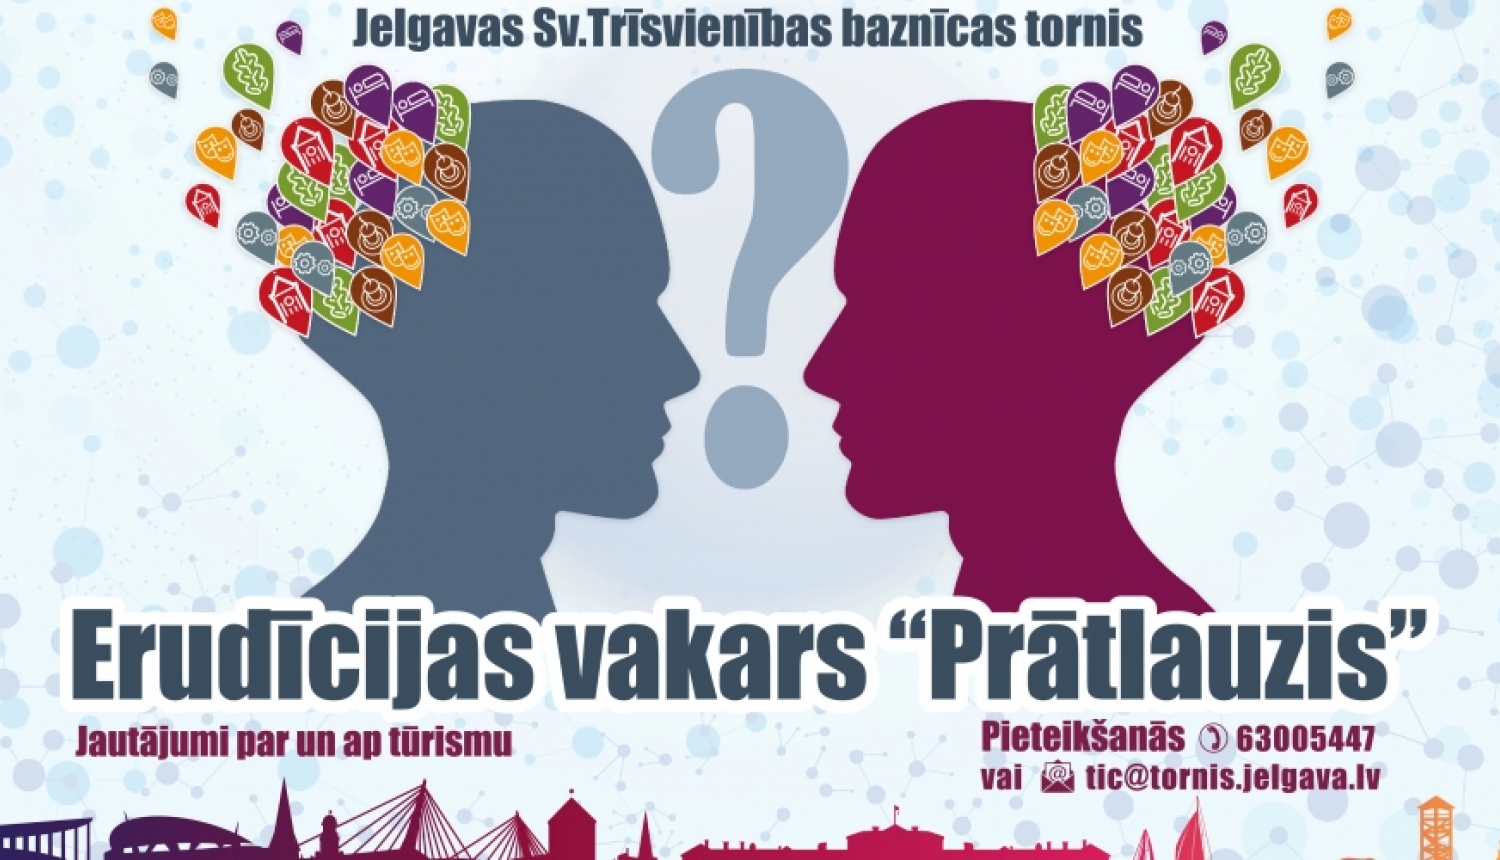 Jelgavas reģionālais tūrisma centrs aicina uz erudīcijas vakaru ciklu “Prātlauzis”